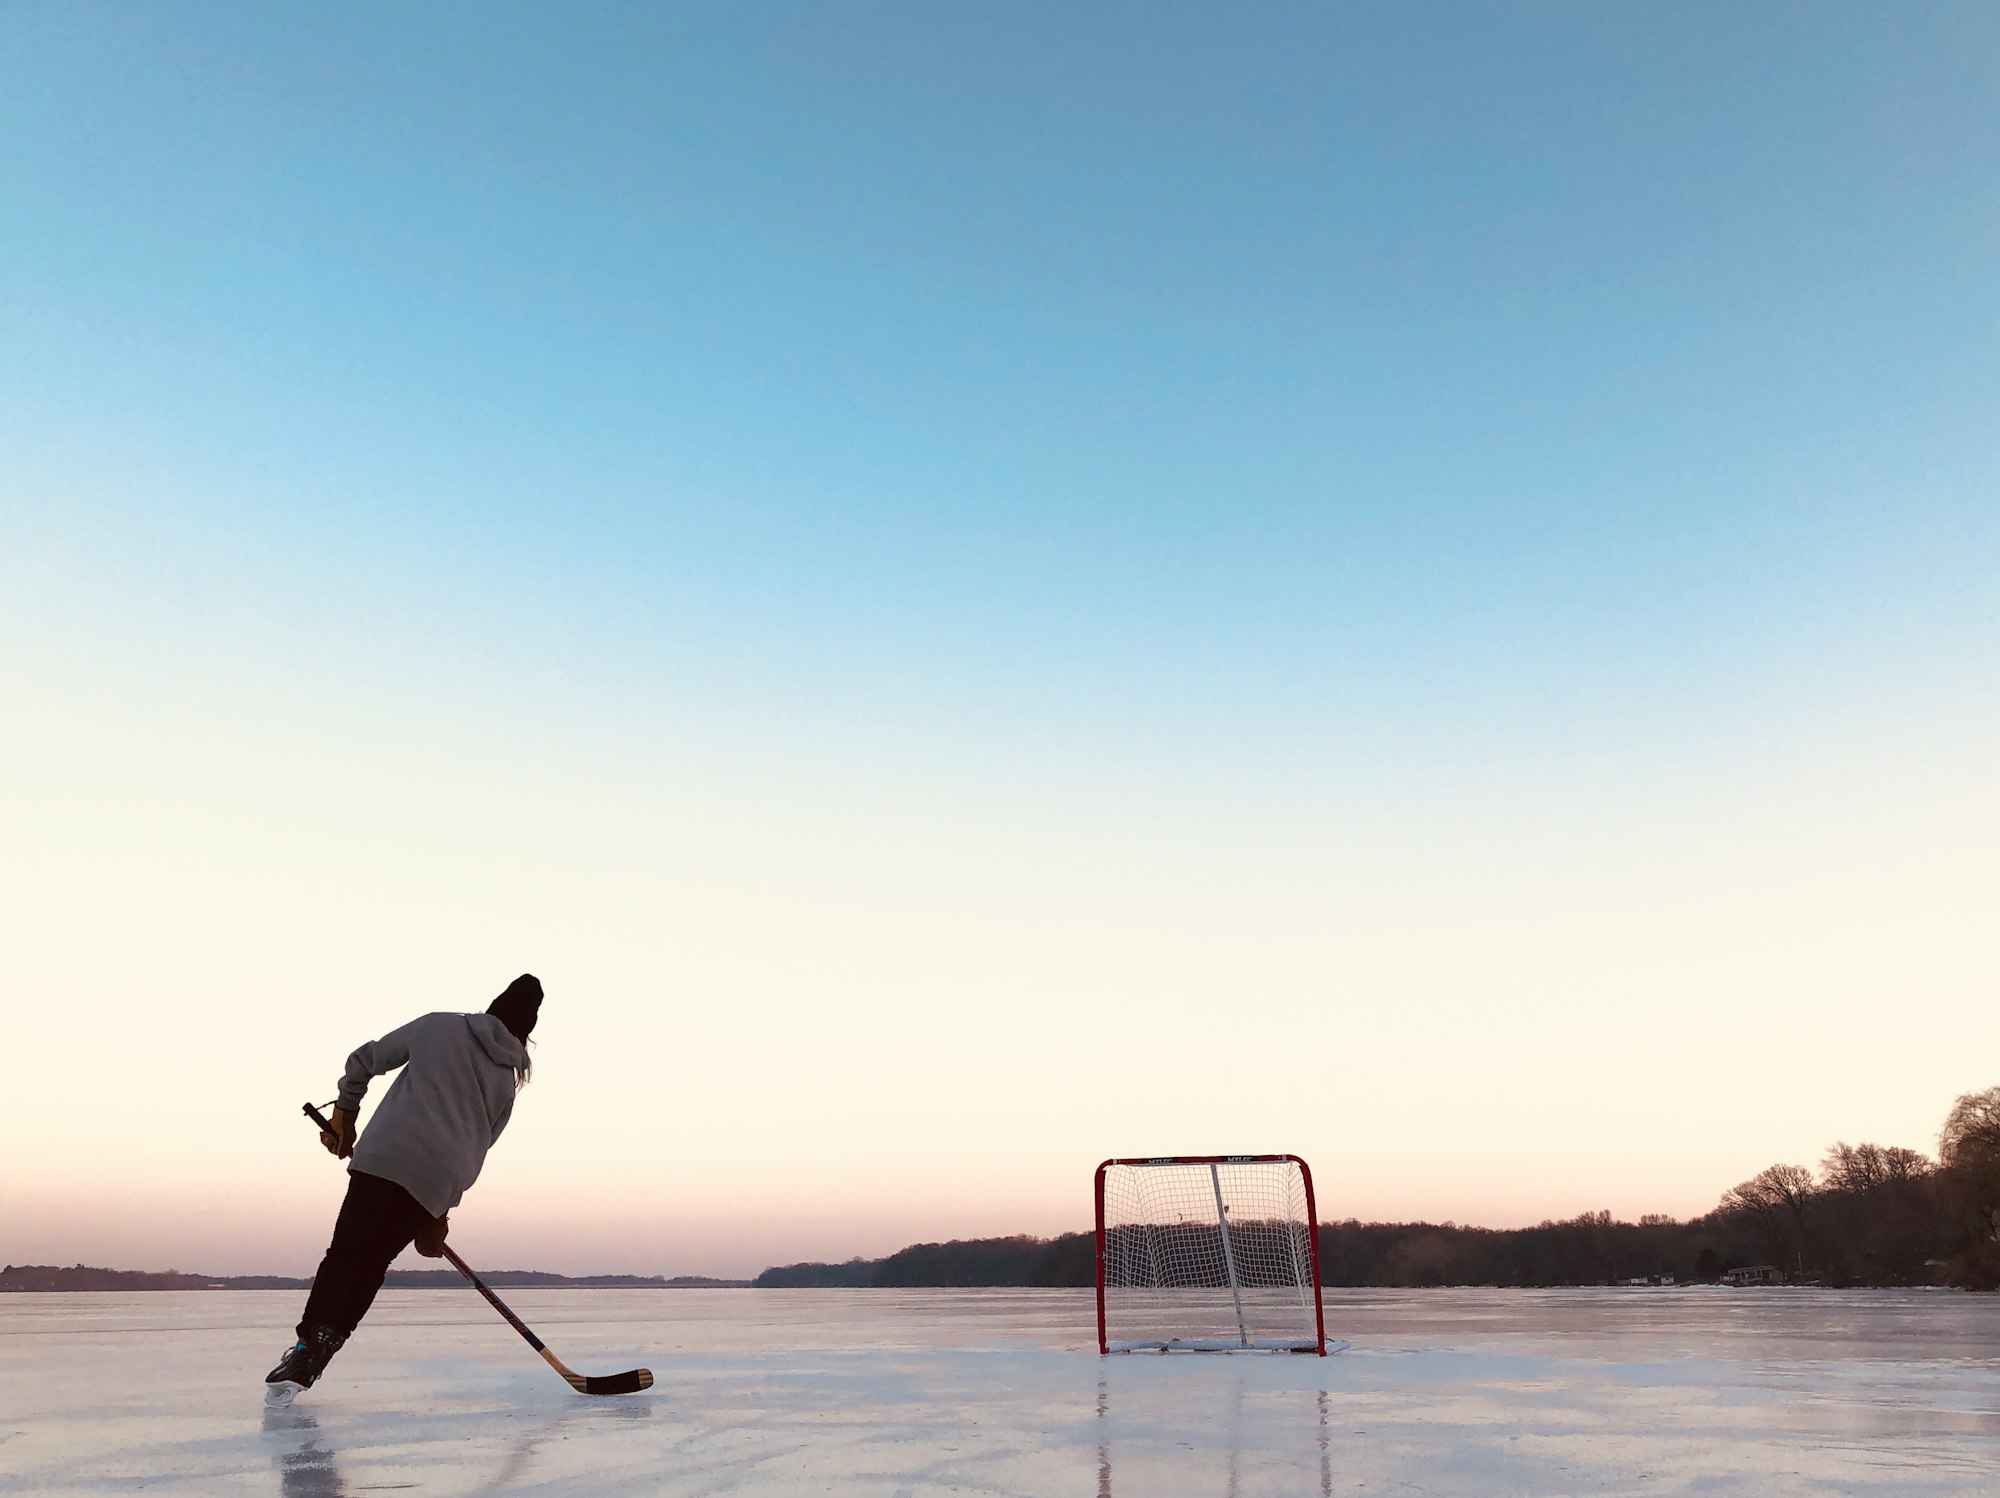 Pond hockey in Minnesota. 